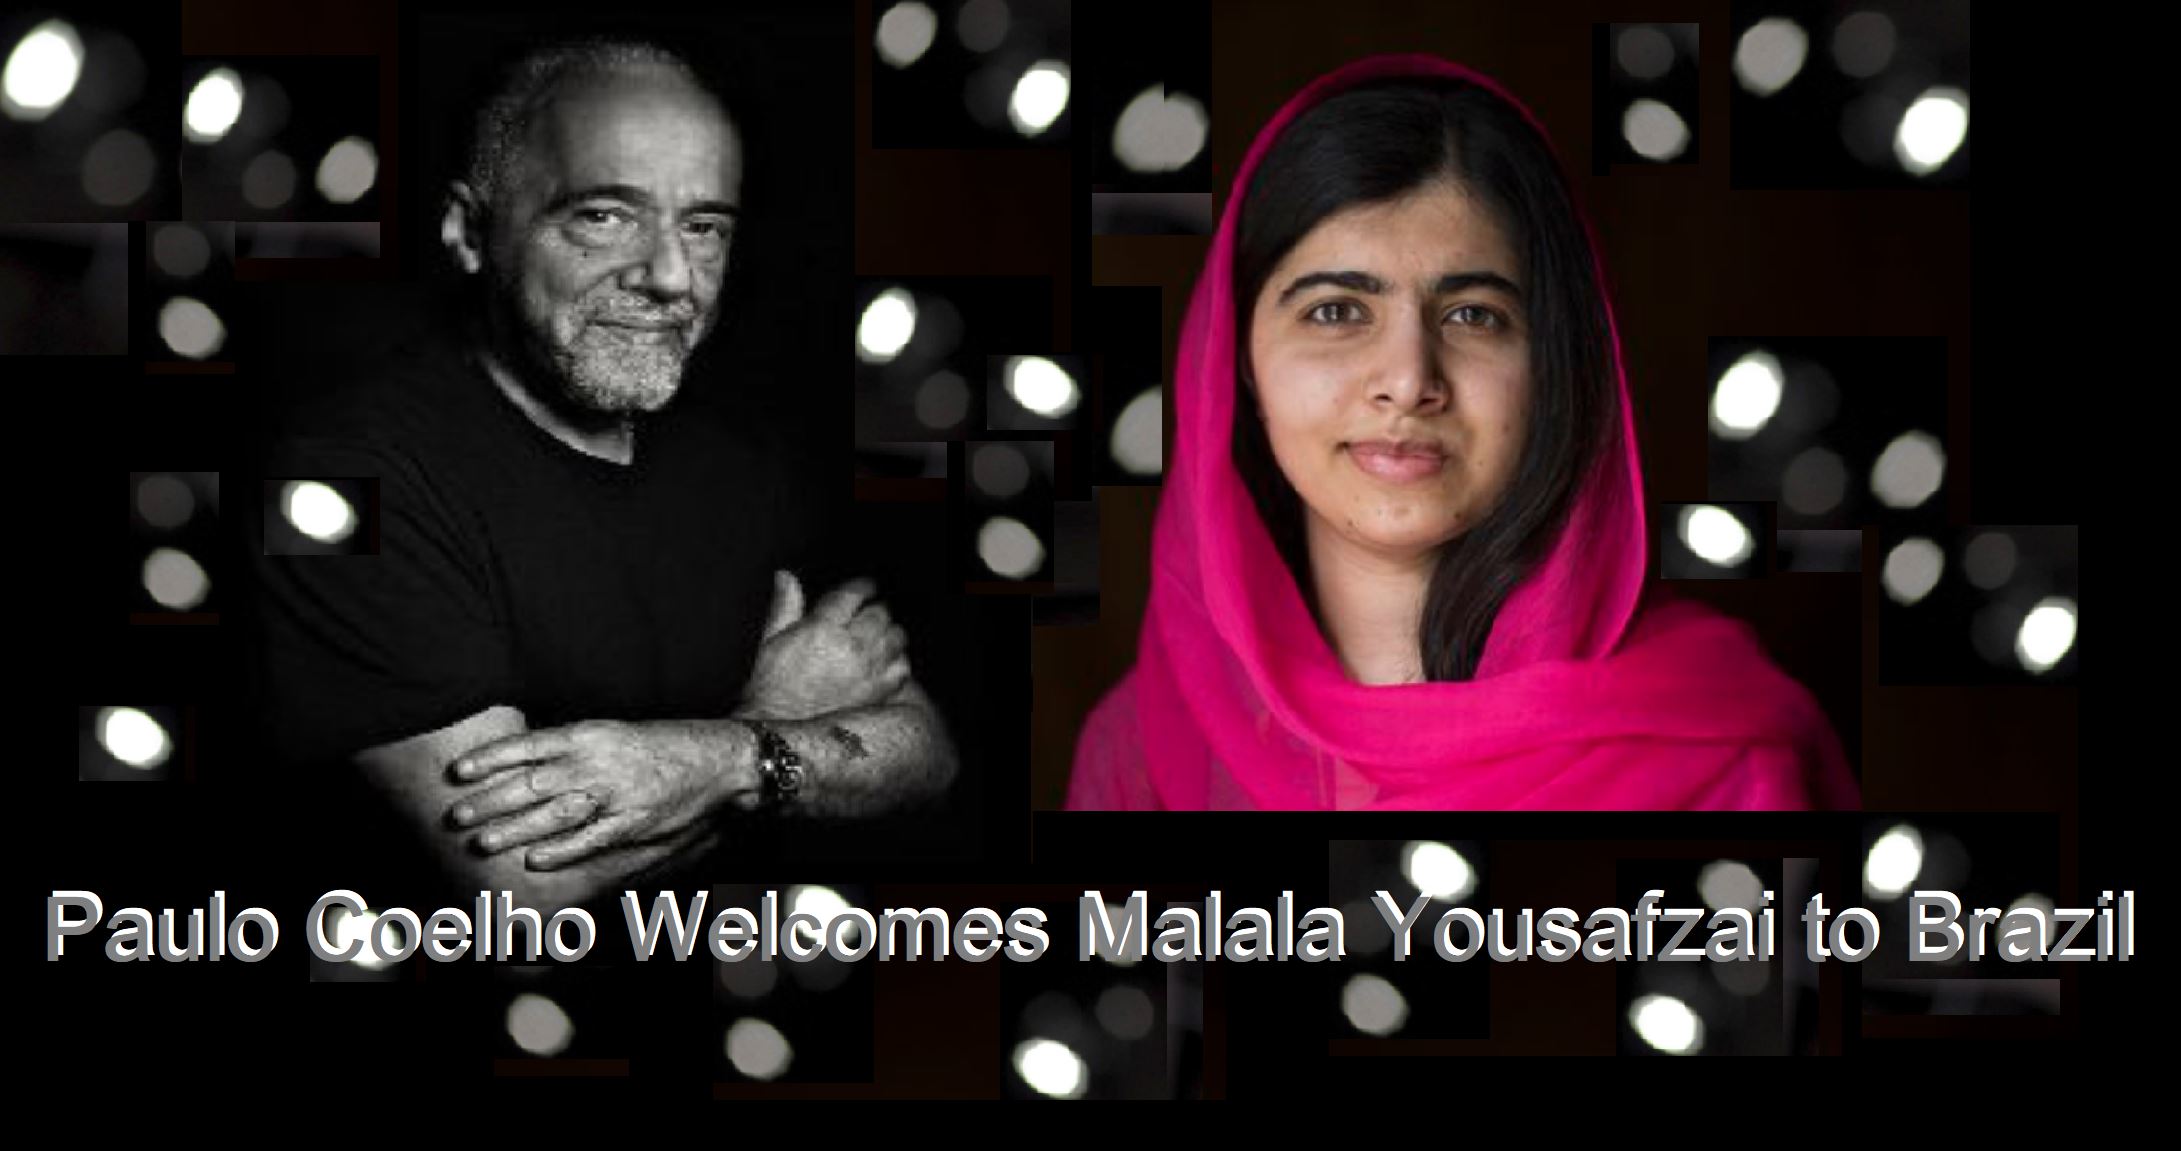 Paulo Coelho wecomes Malala Yousafzai